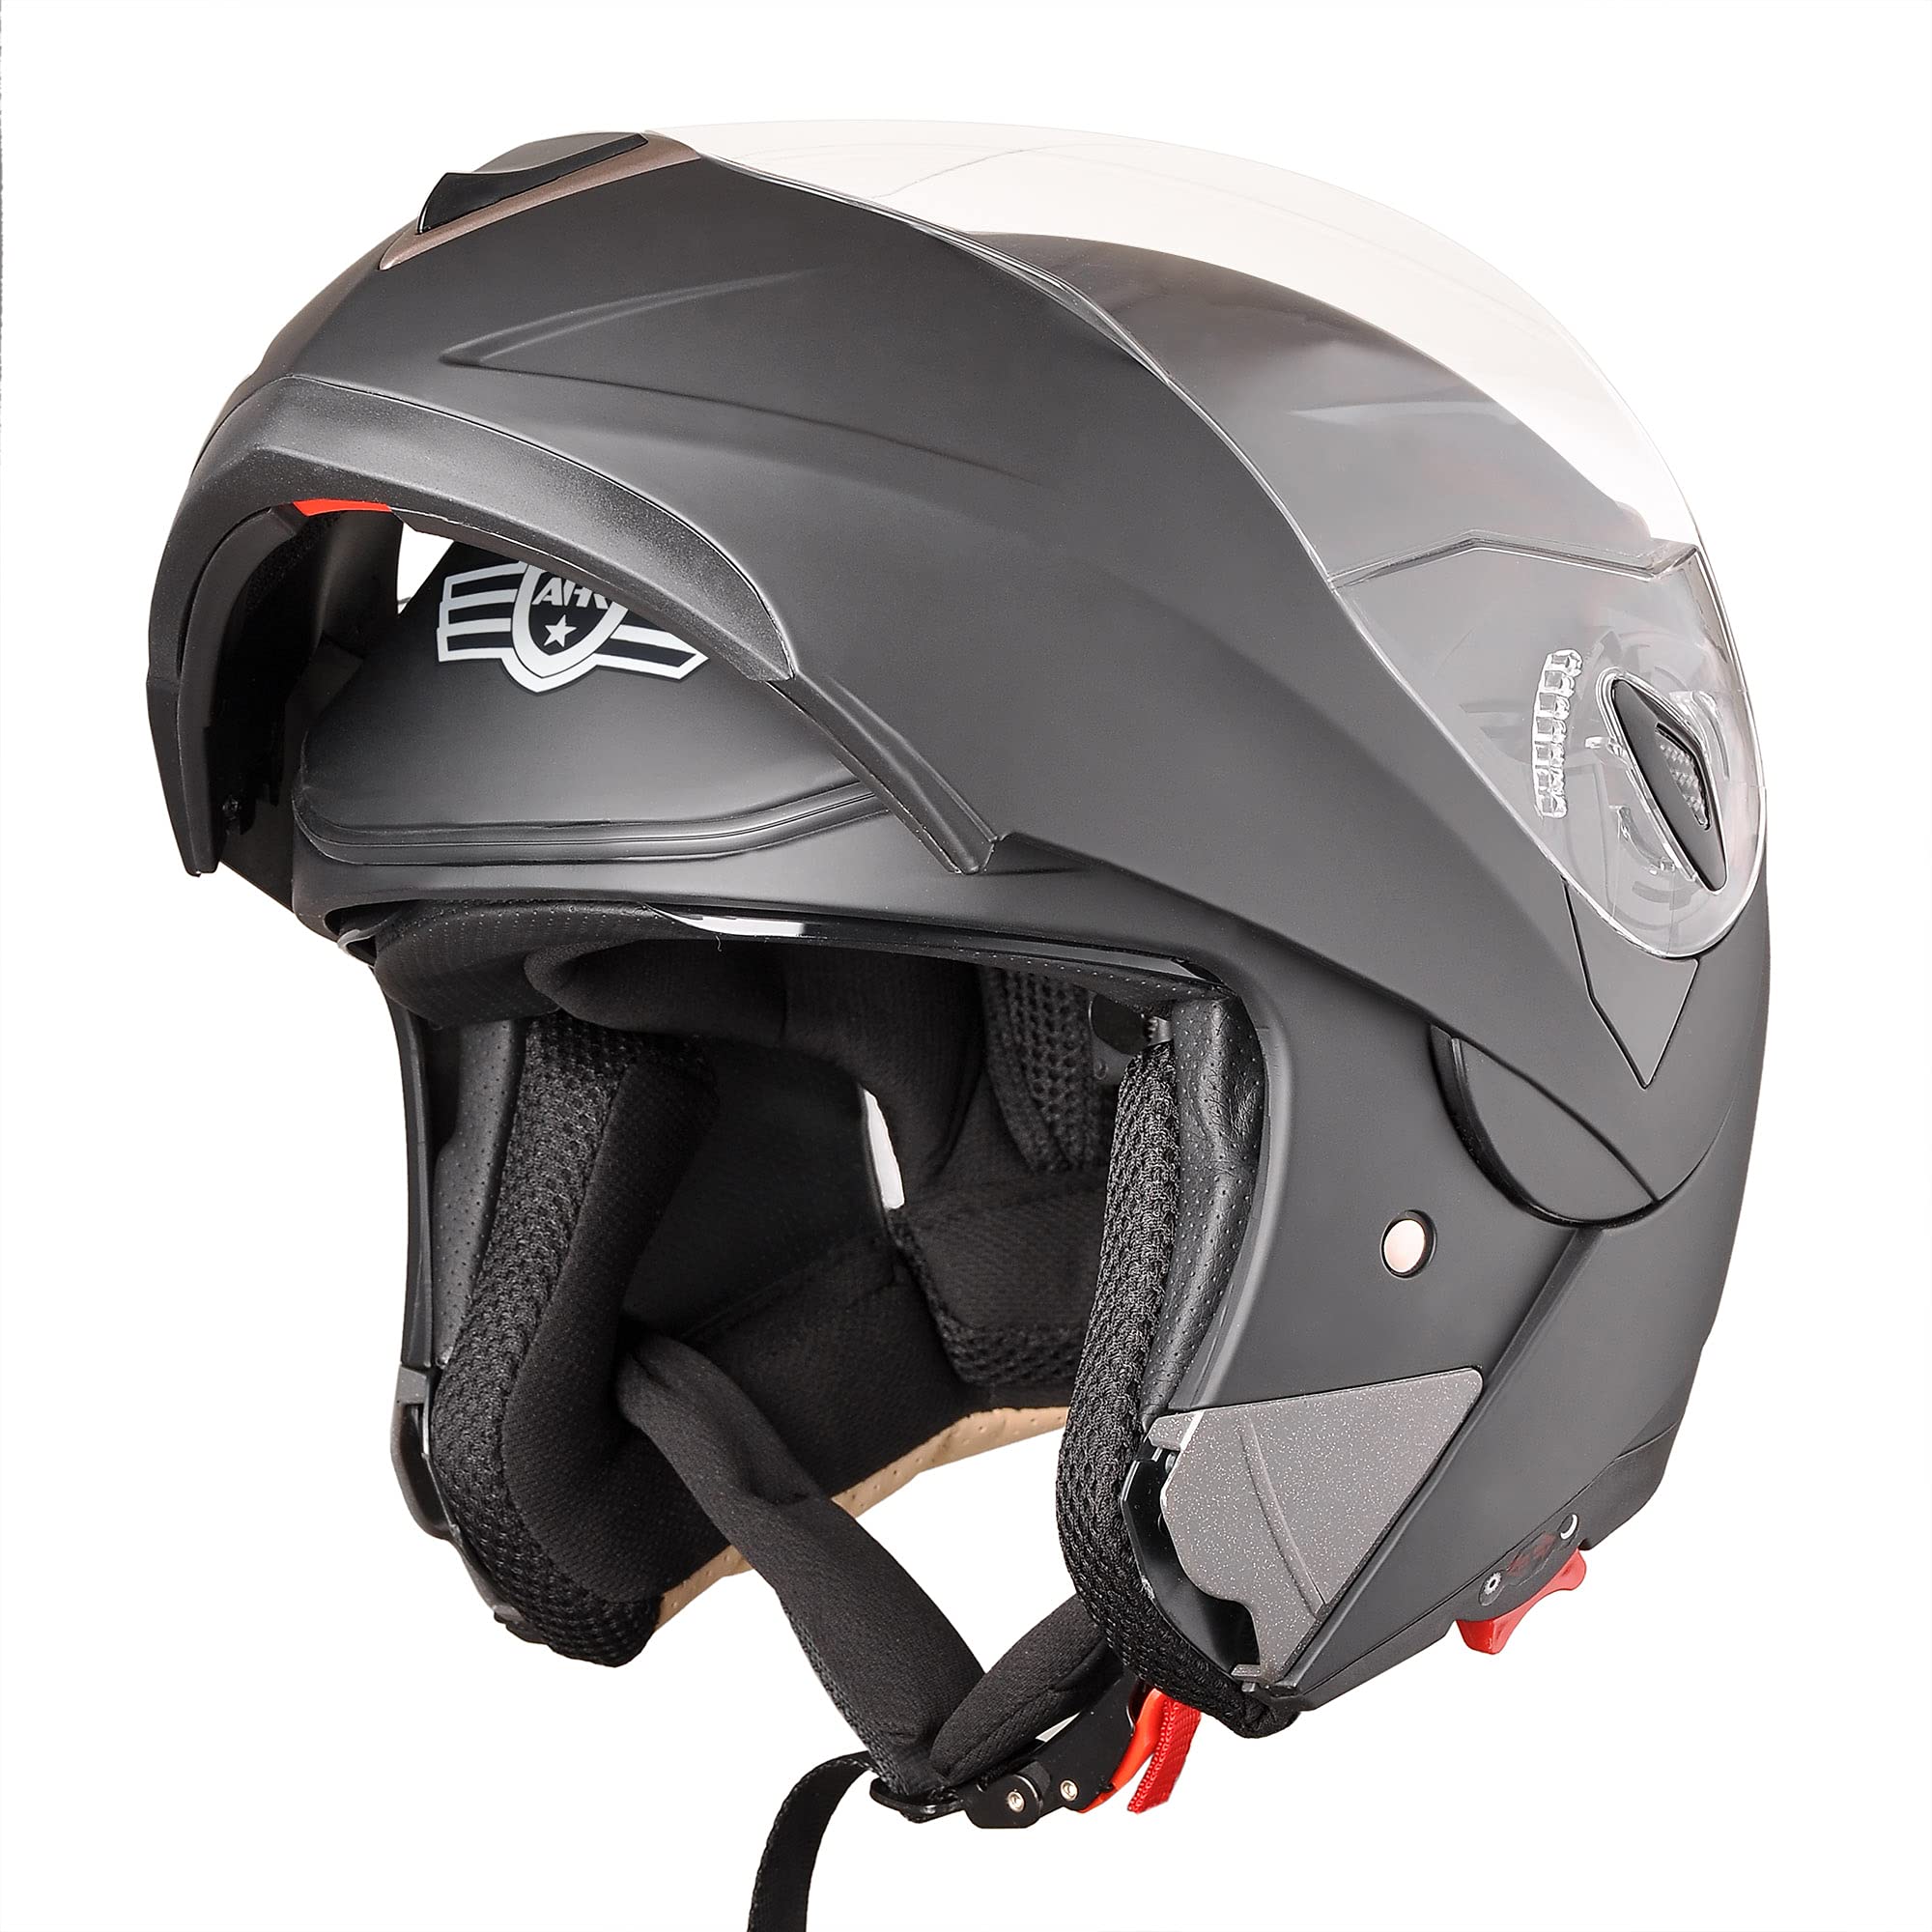 AHR Motorcycle Dual Visor Modular Flip up Full Face Helmet DOT Approved - AHR Helmet RUN-M for Adult Motorbike Street Bike Moped Racing (Matt Black...